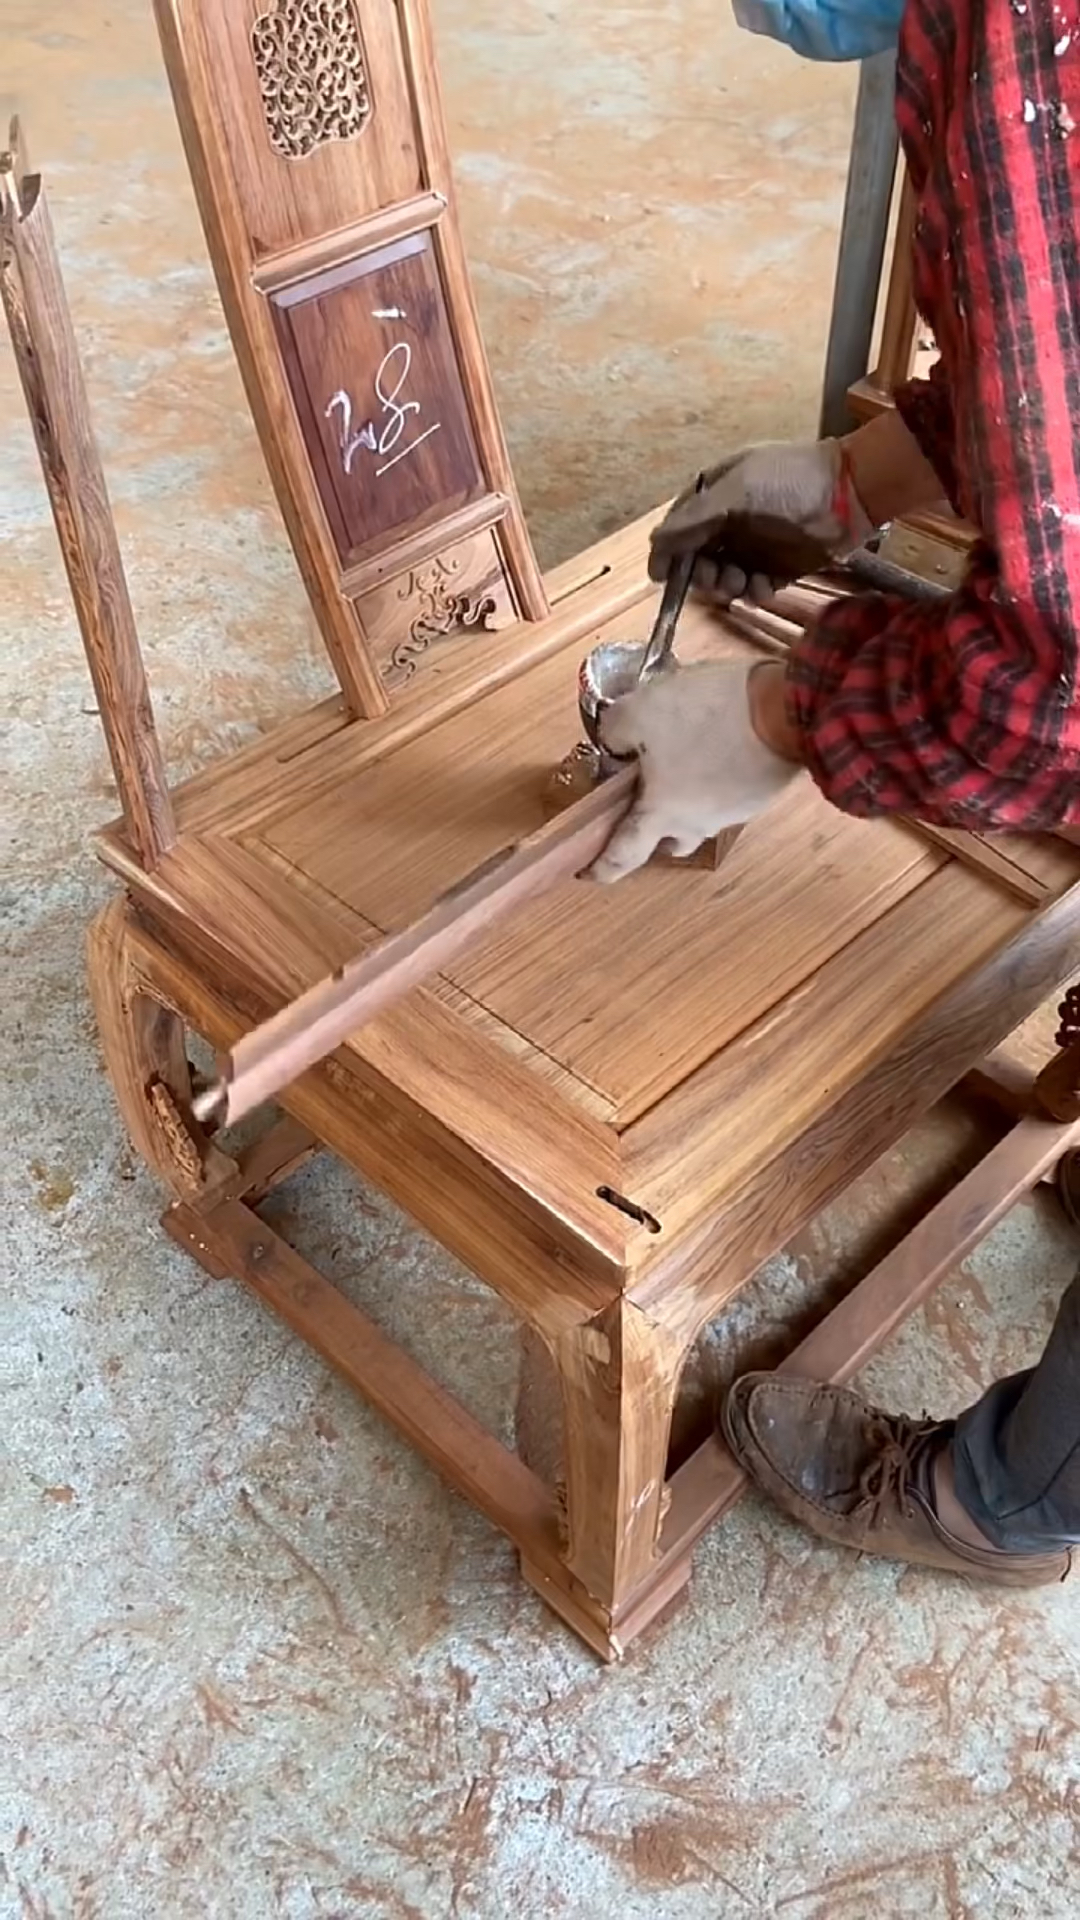 传统家具红木圈椅制作榫卯结构组装器型优美经典耐看